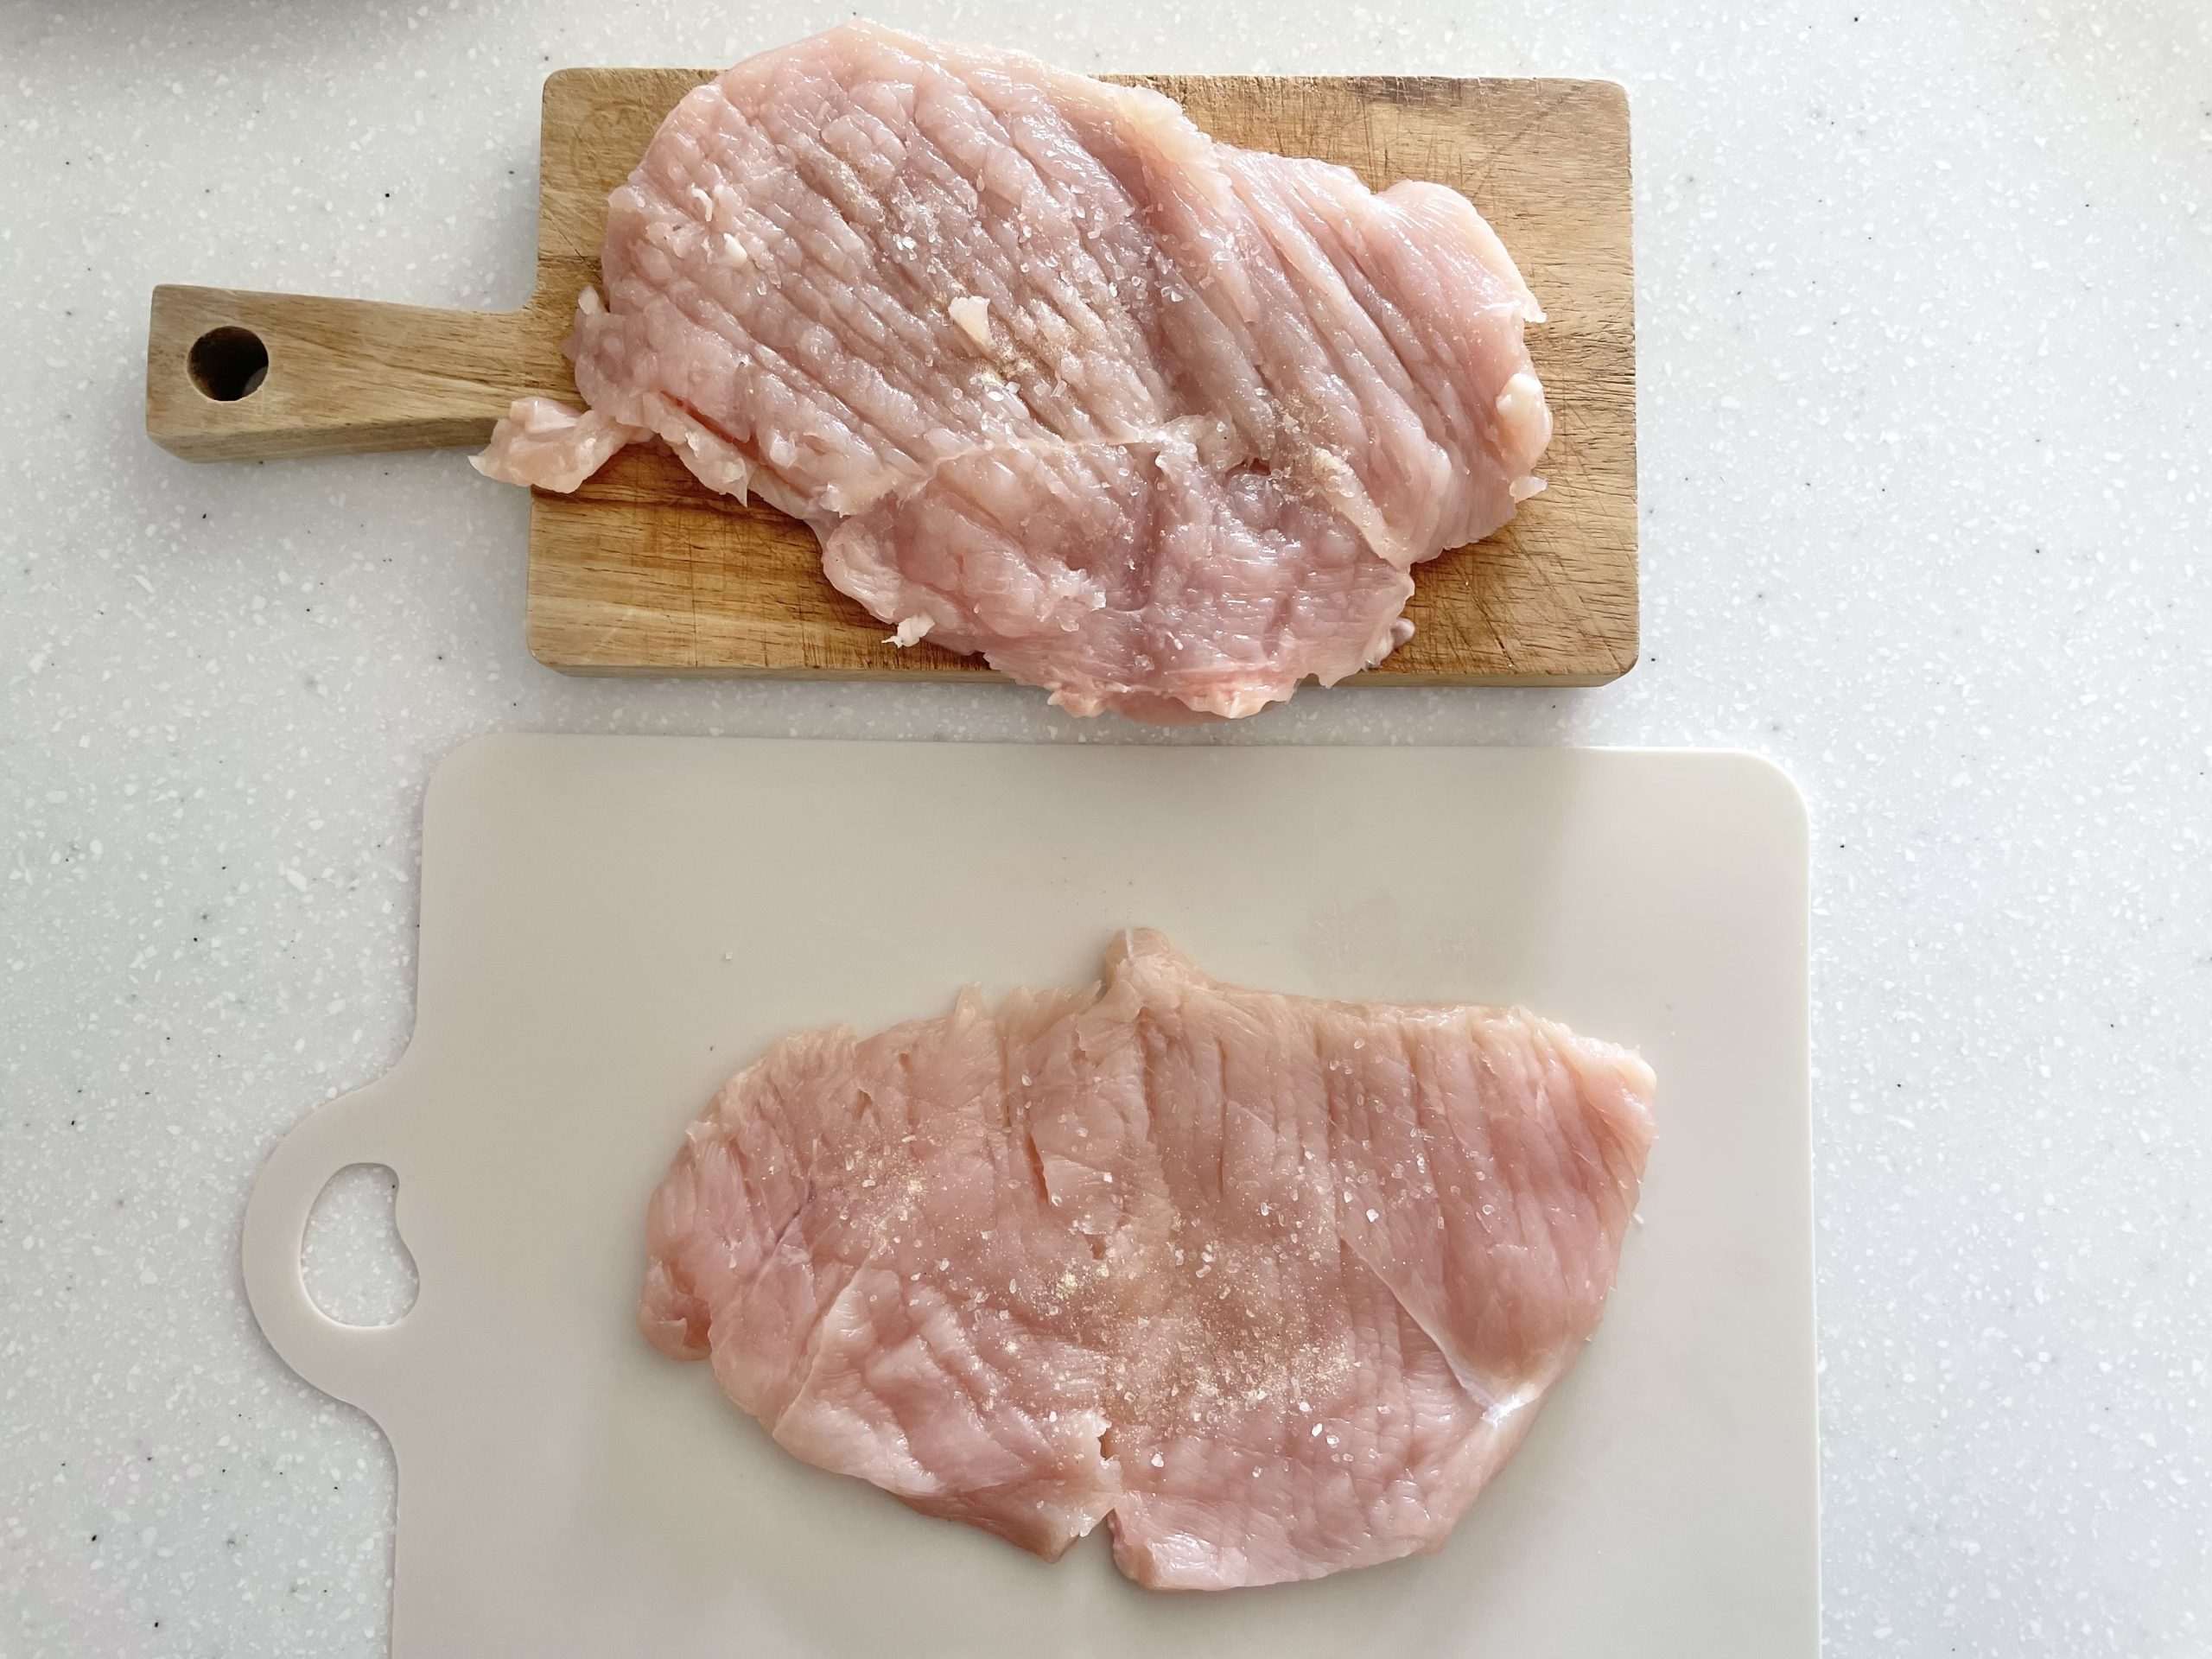 【下準備】鶏むね肉の皮を剥ぎ半分に切り、真ん中に切り込みを入れて開いたら両面を包丁の裏で叩いて伸ばす。開いた面に塩胡椒を振っておく。